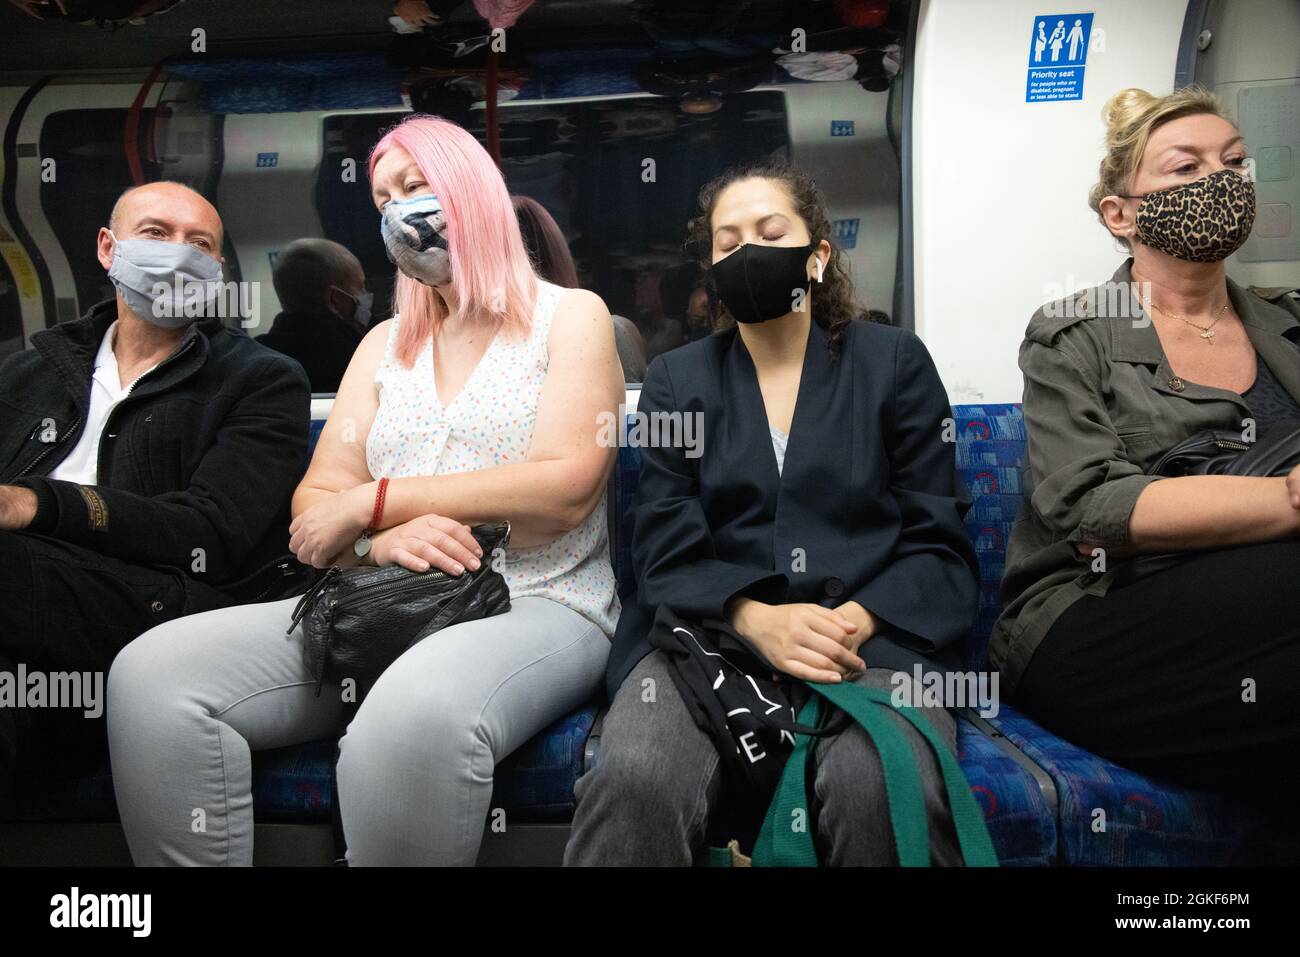 Covid 19 UK; Menschen, die während der COVID 19-Pandemie Masken trugen, reisten mit der Londoner U-Bahn, London, Großbritannien Stockfoto